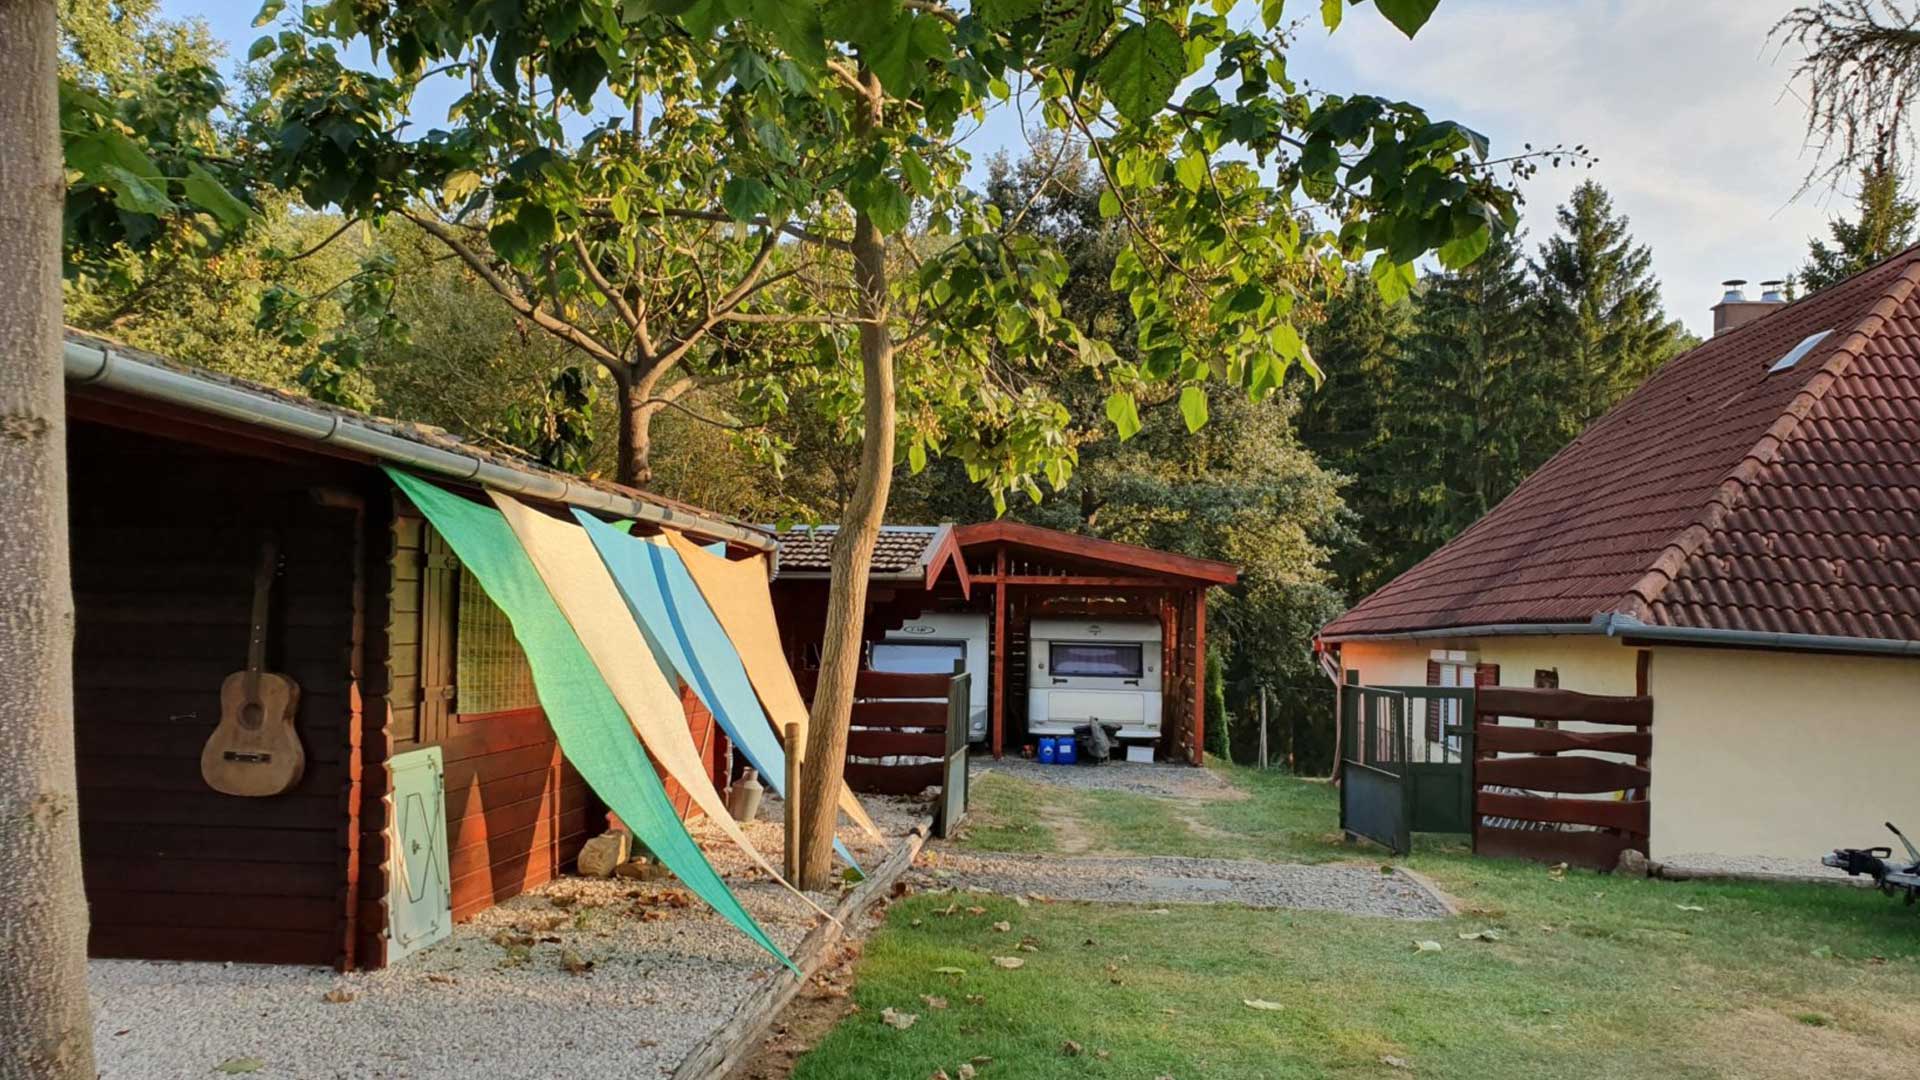 Campingplatz Entsorgung